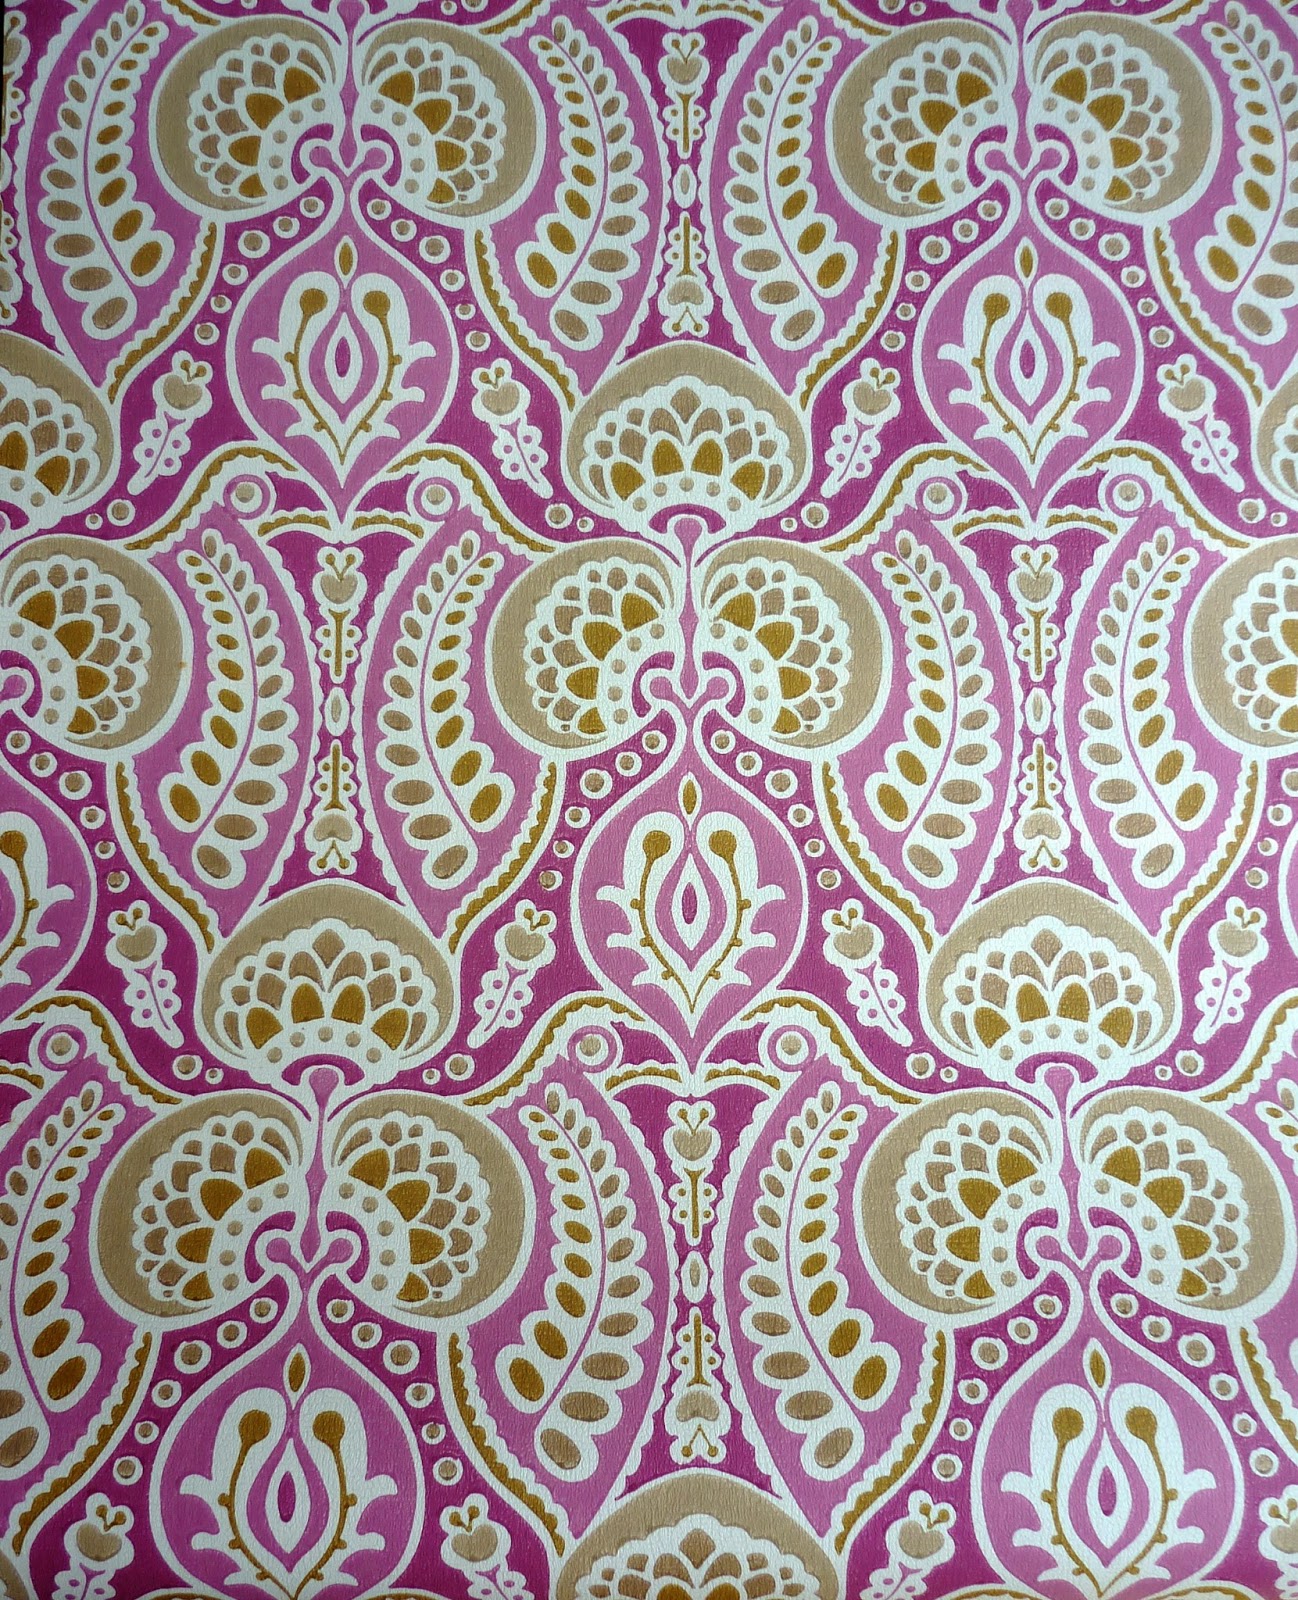 44+] Indian Inspired Wallpaper - WallpaperSafari